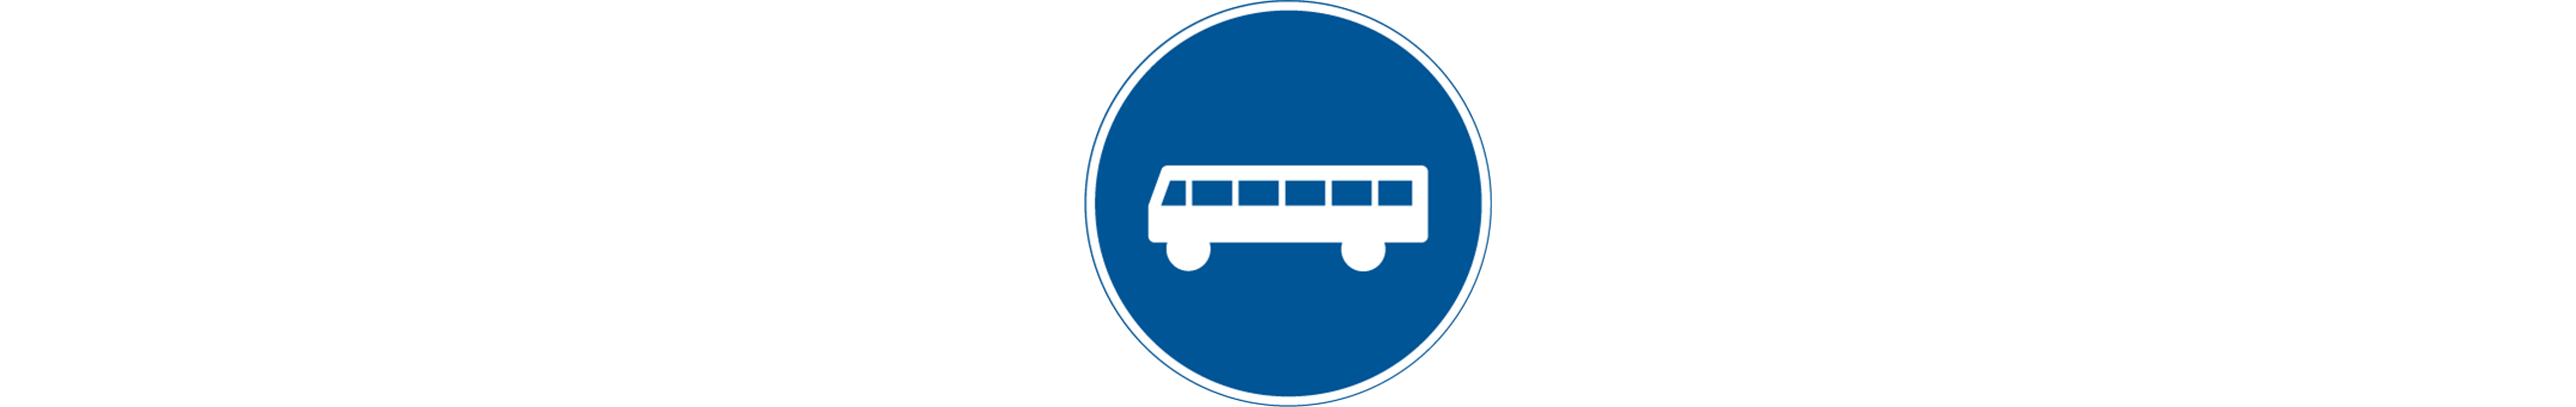 vägmärke för linjetrafik